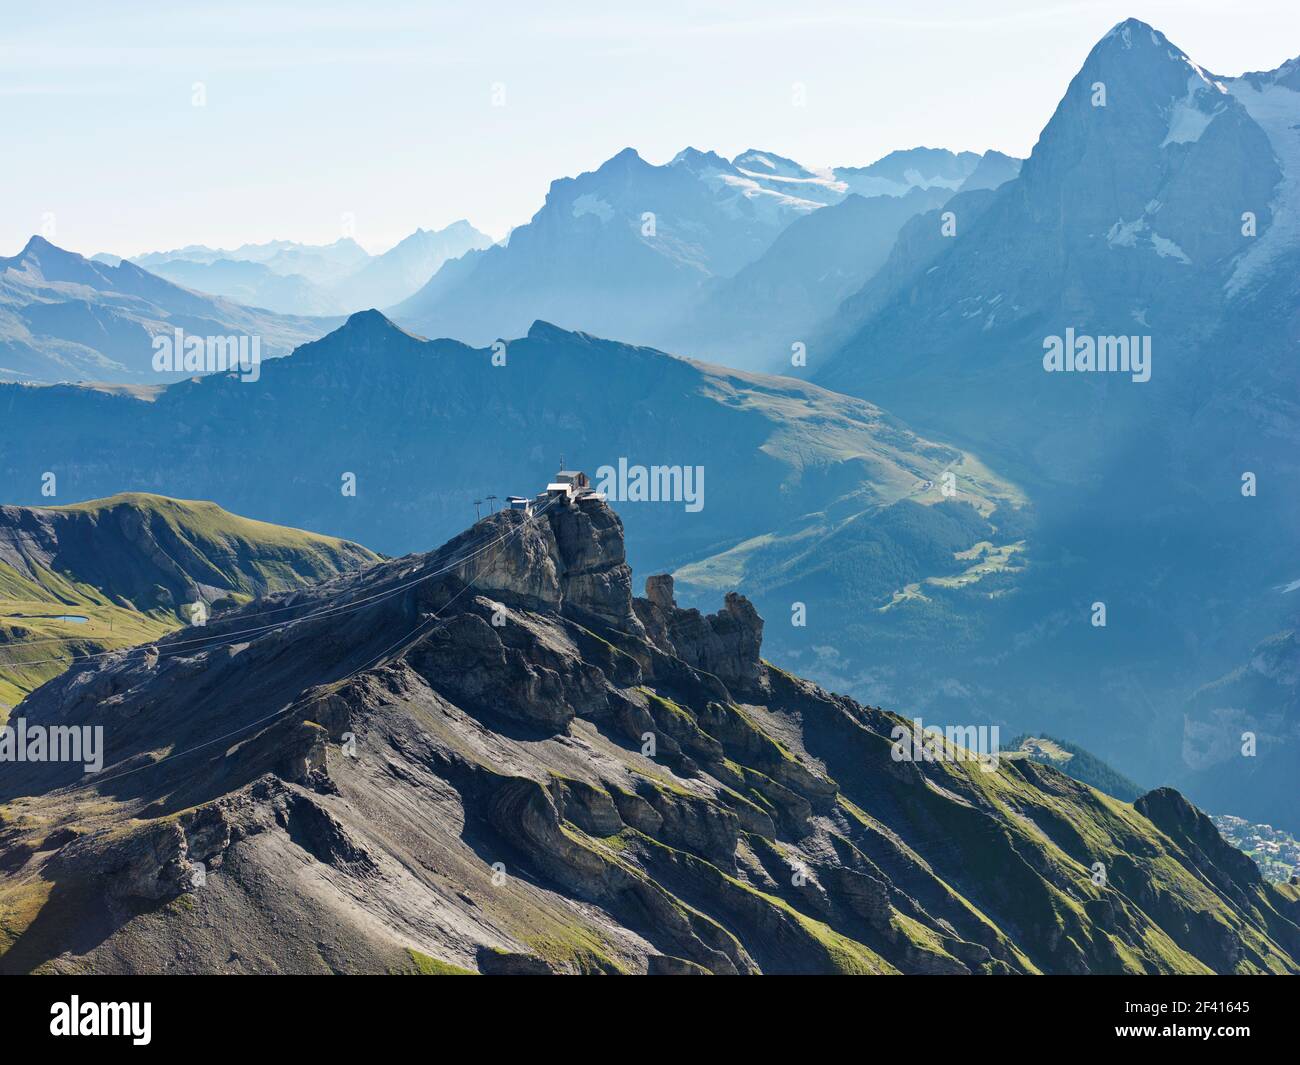 Switzerland Schilthorn Jungfrau Region. view from Schilthorn which is a 2,970 metre high summit in the Bernese Alps in Switzerland, above Mürren. Stock Photo